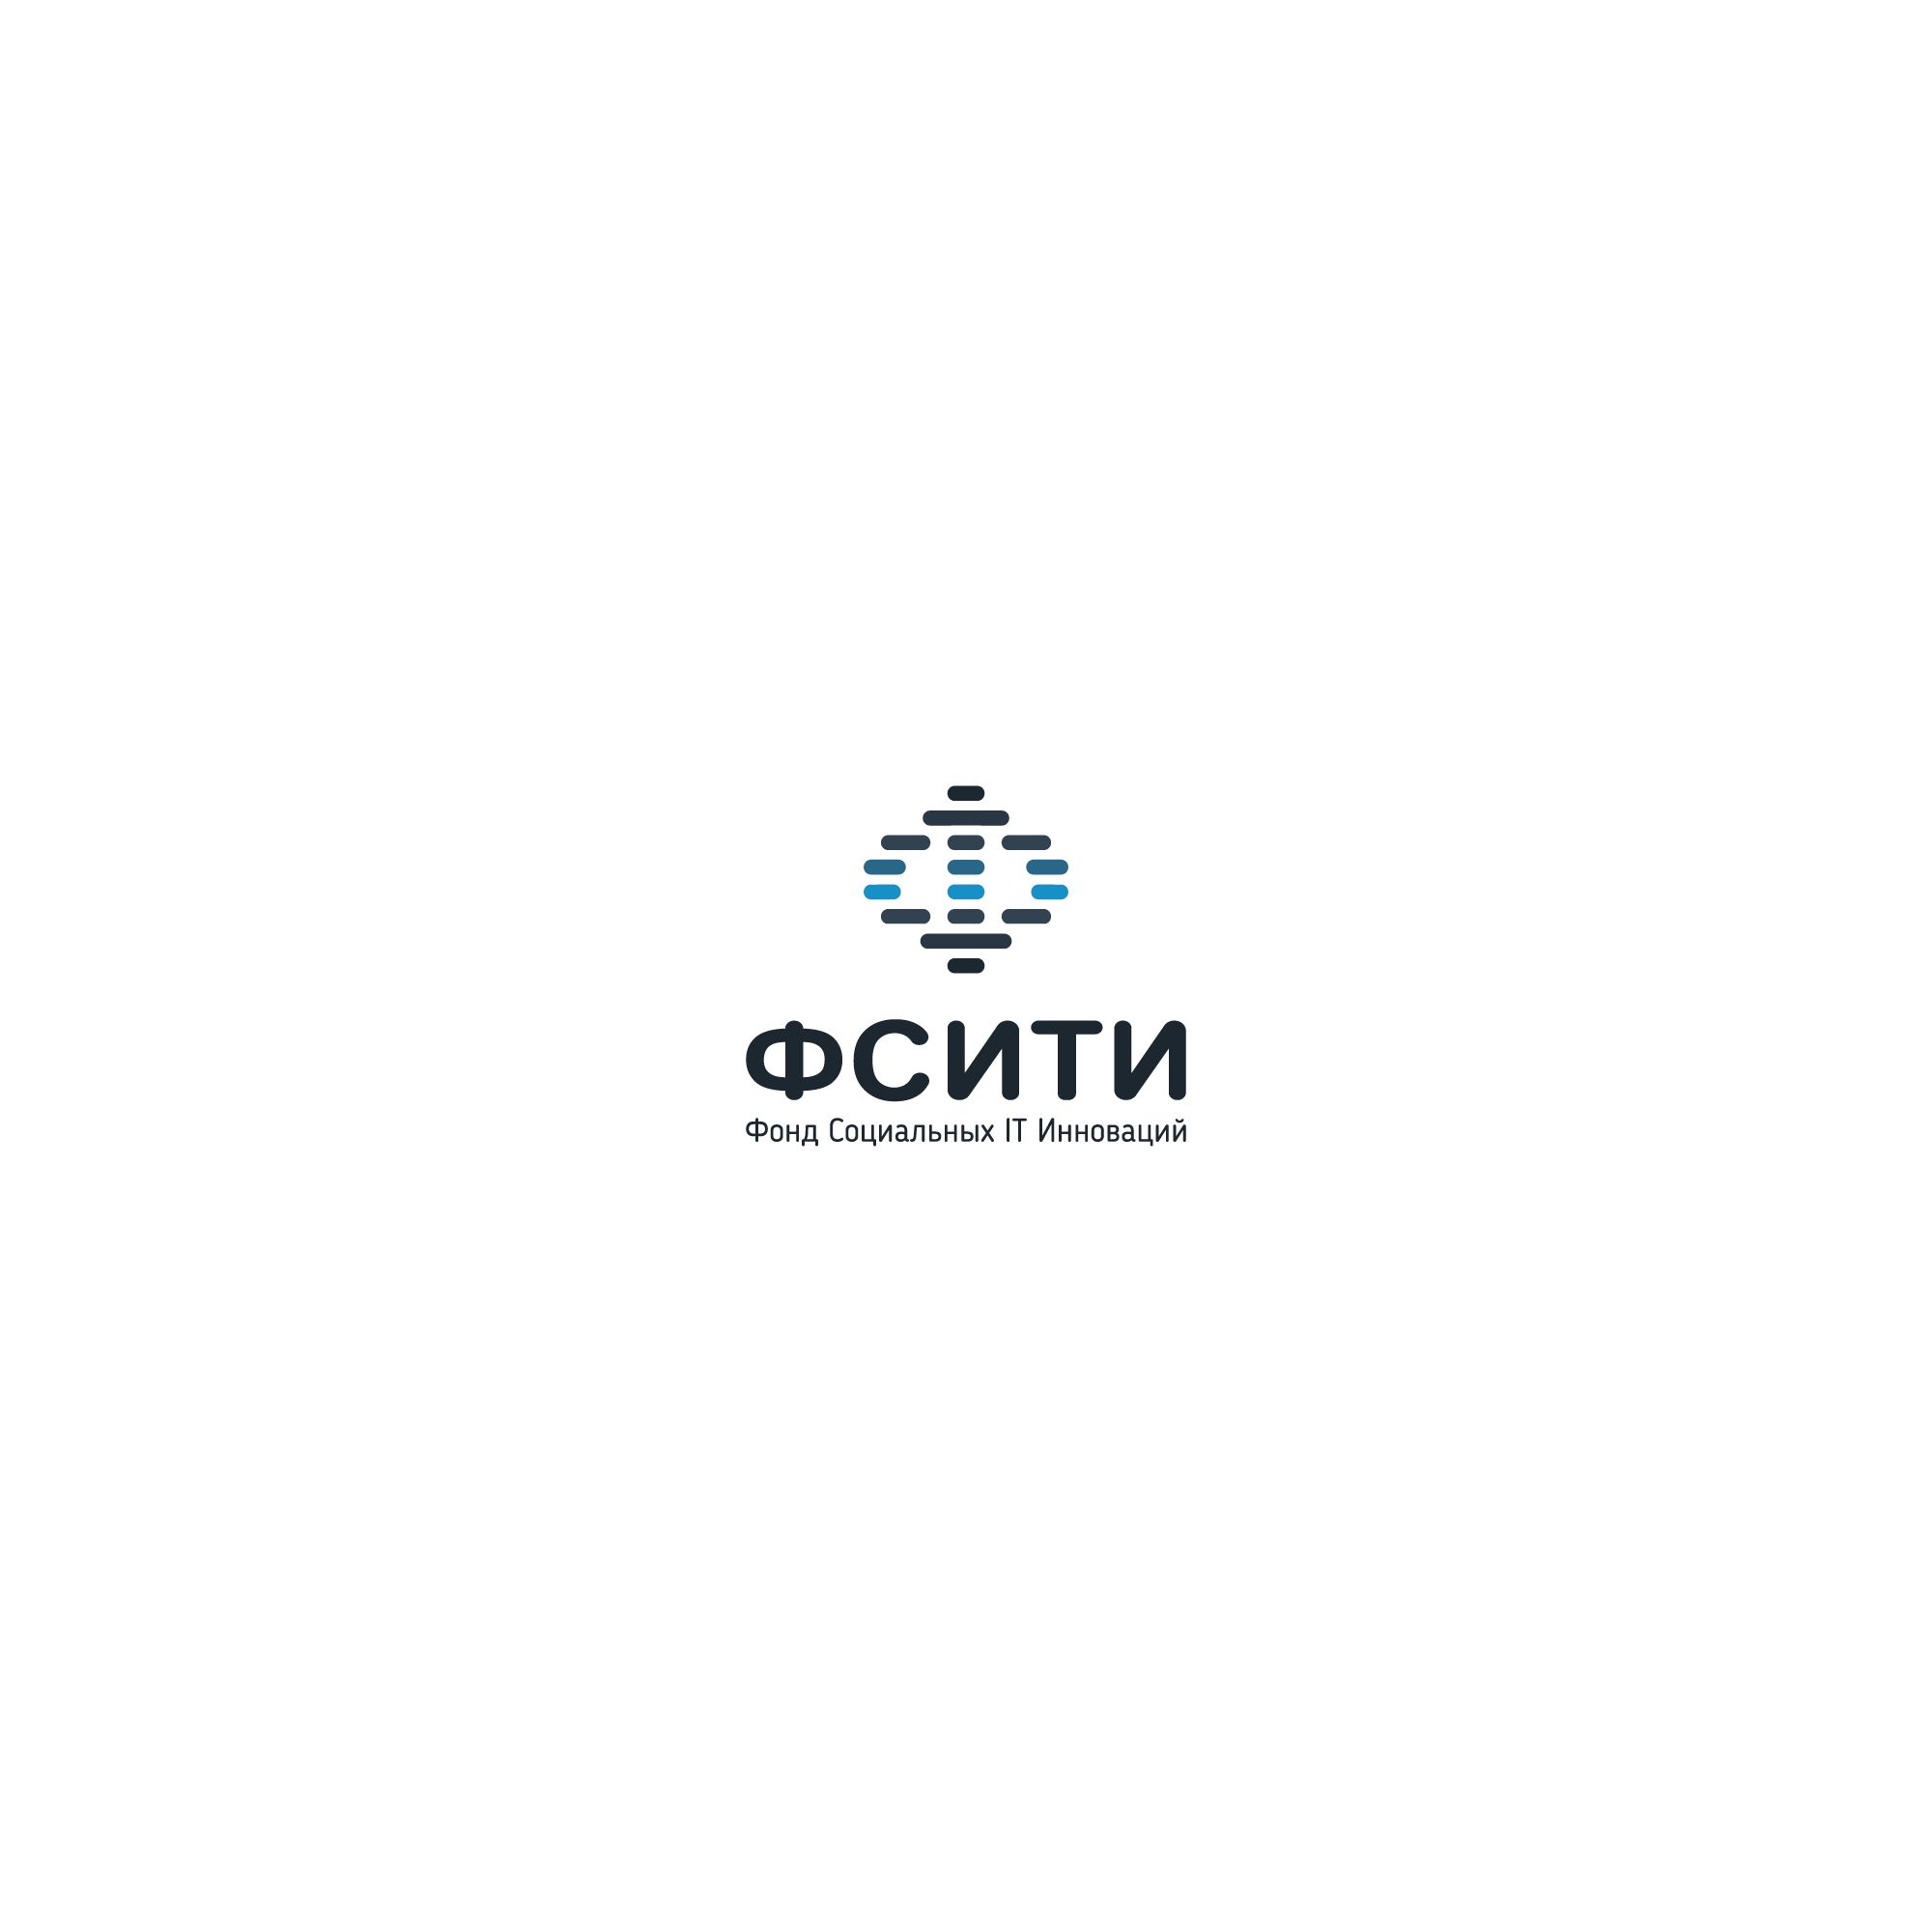 Логотип для ФСИТИ - Фонд Социальных IT Инноваций  - дизайнер freddydonval